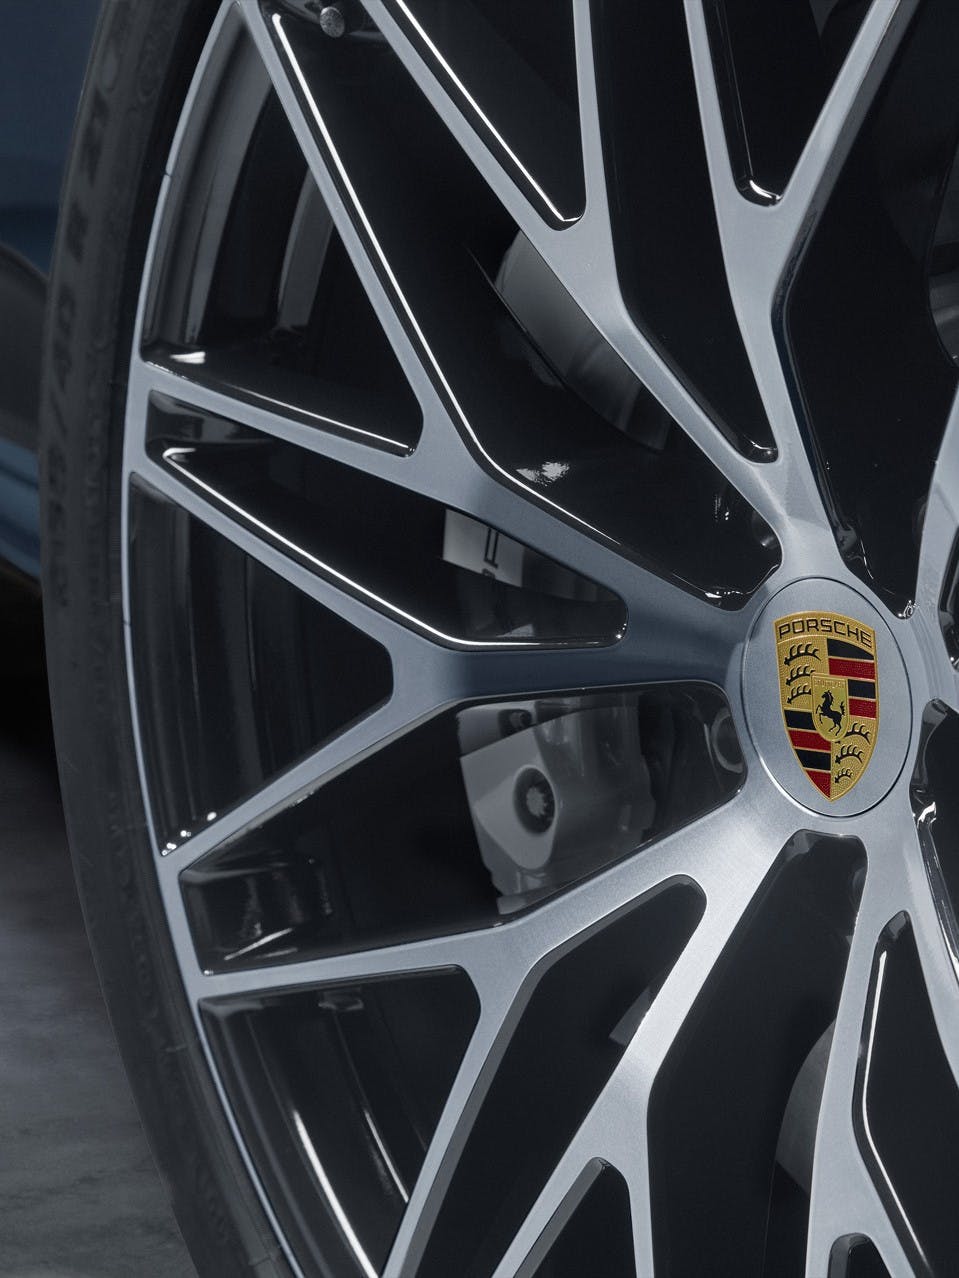 Metallic rim with Porsche crest